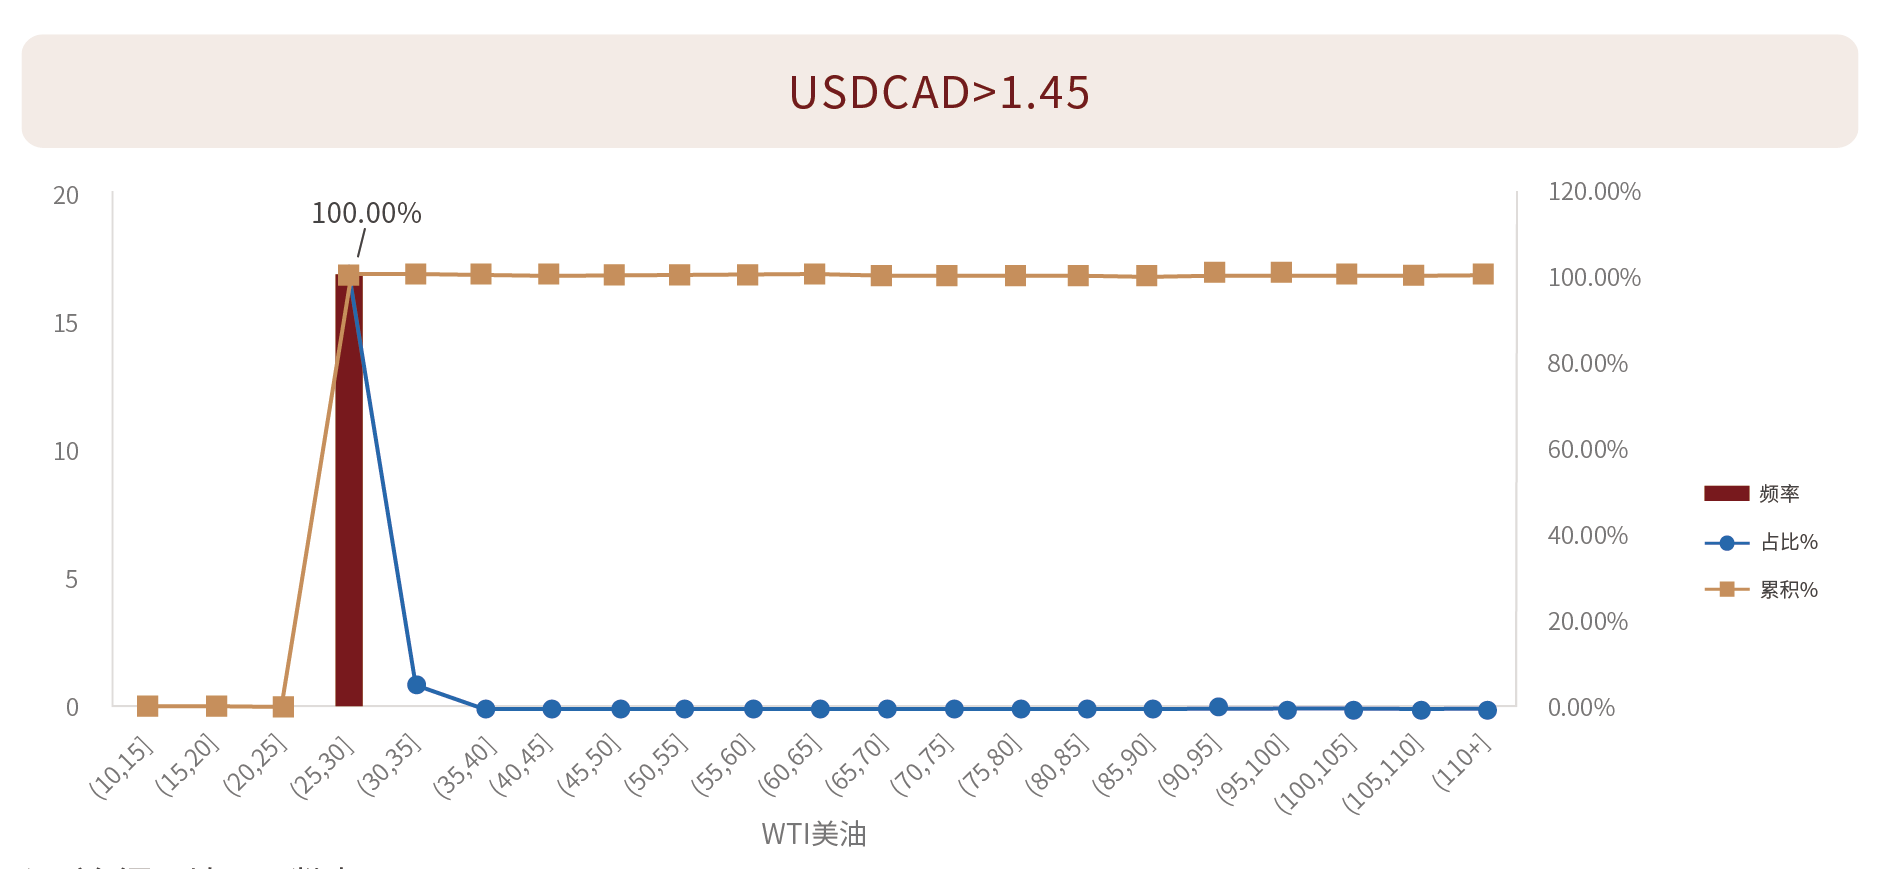 USDCAD、WTI美油的日线收盘数据